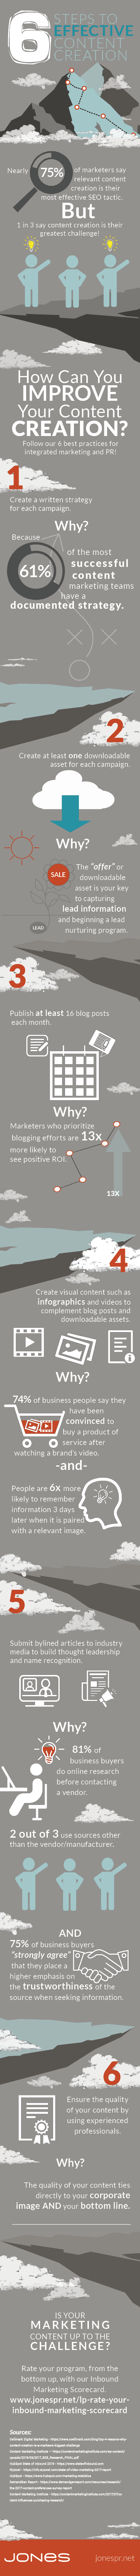 Jones-infographic-inbound-marketing-content-creation-checklistDraft3